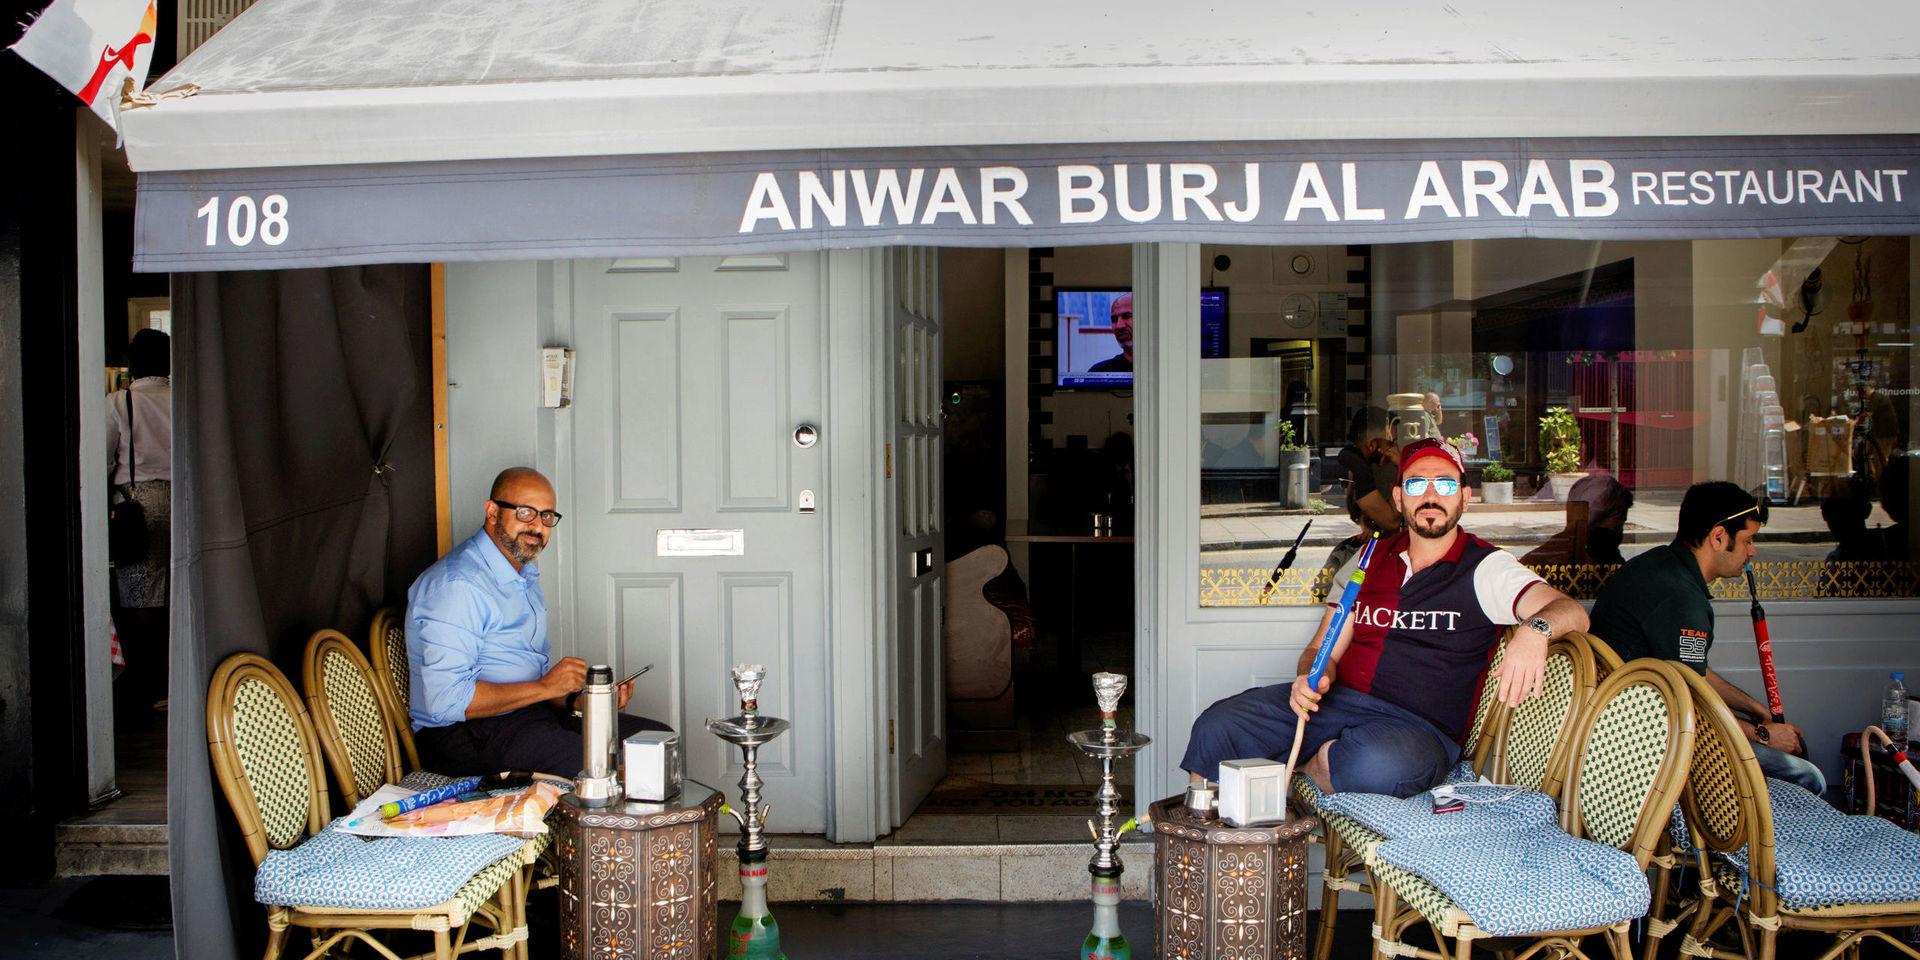 Abod Salah och Omar Kader sitter utanför restaurangen och röker. De hejar båda på England och tror att de vinner på lördag.